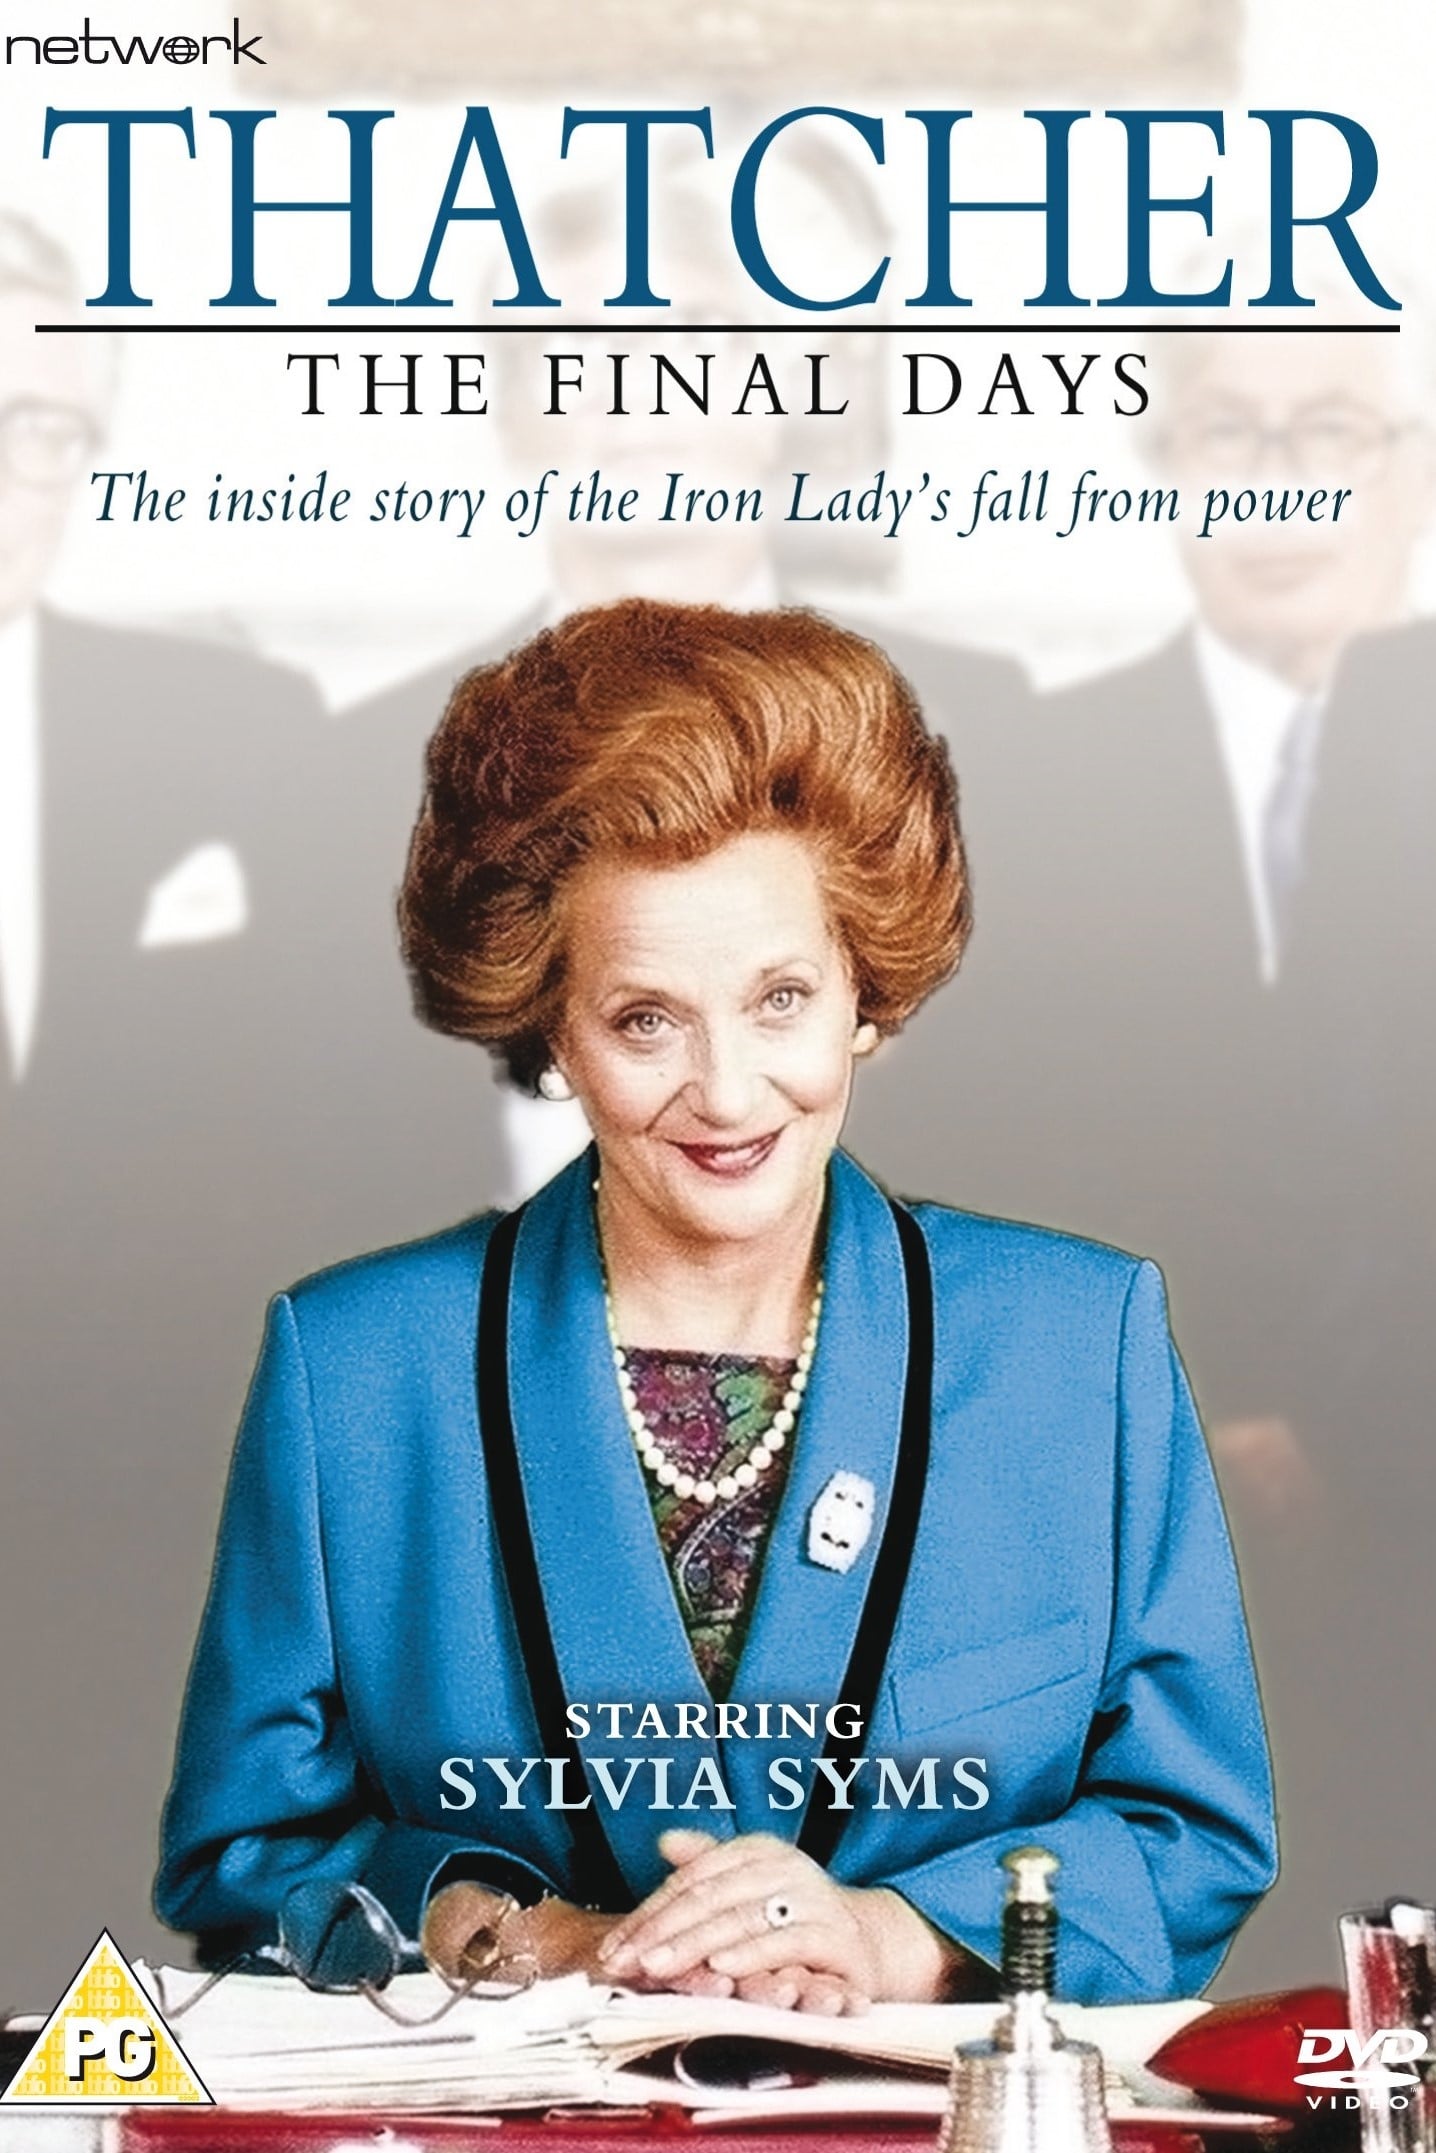 Thatcher: The Final Days (1991)